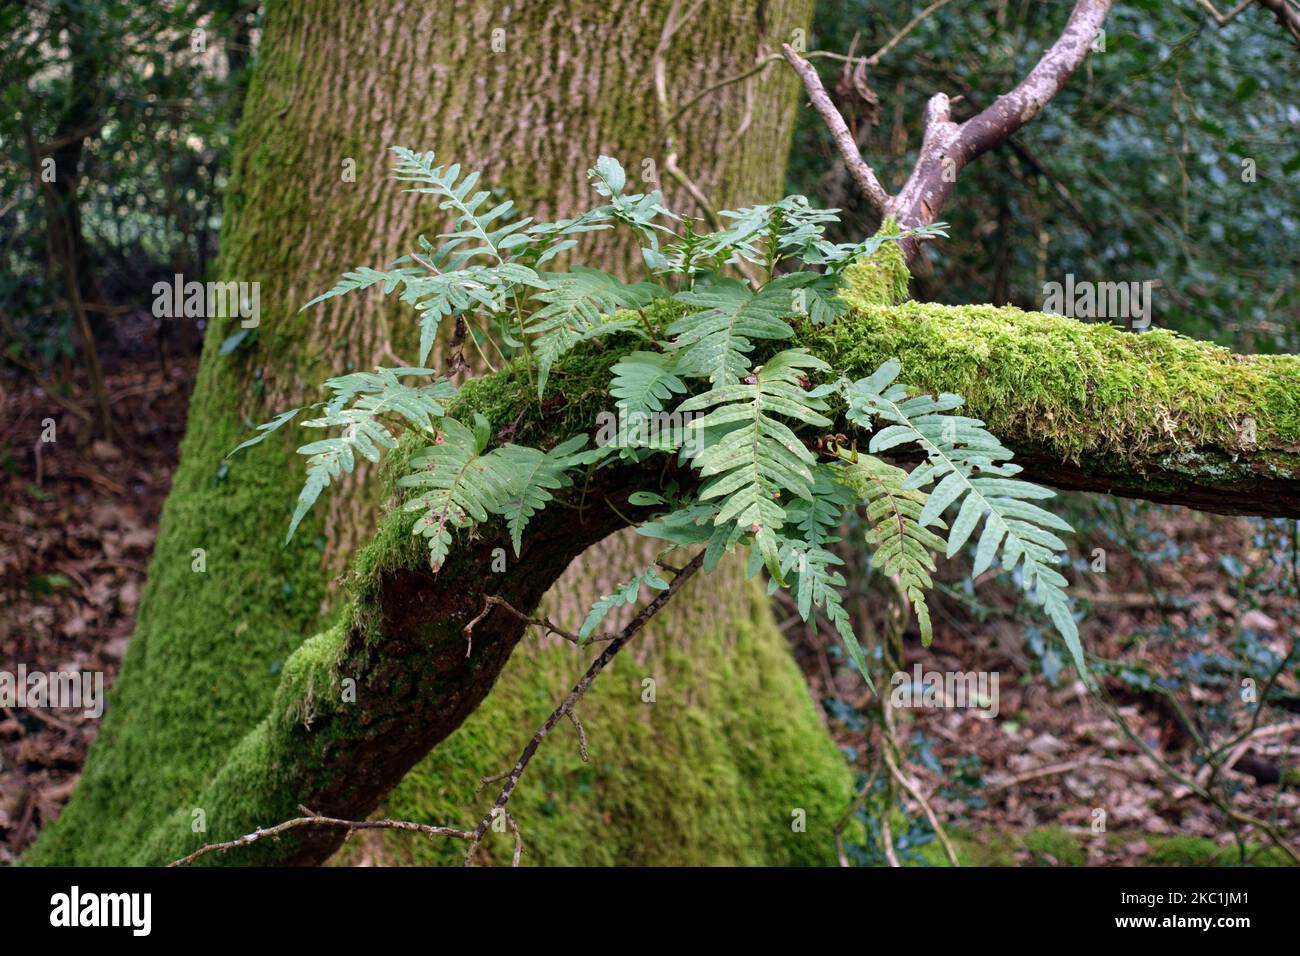 Polypodie commune (Polypodium vulgare) une fougère à feuilles persistantes qui pousse sur une branche de mousse en hiver, Berkshire, janvier Banque D'Images